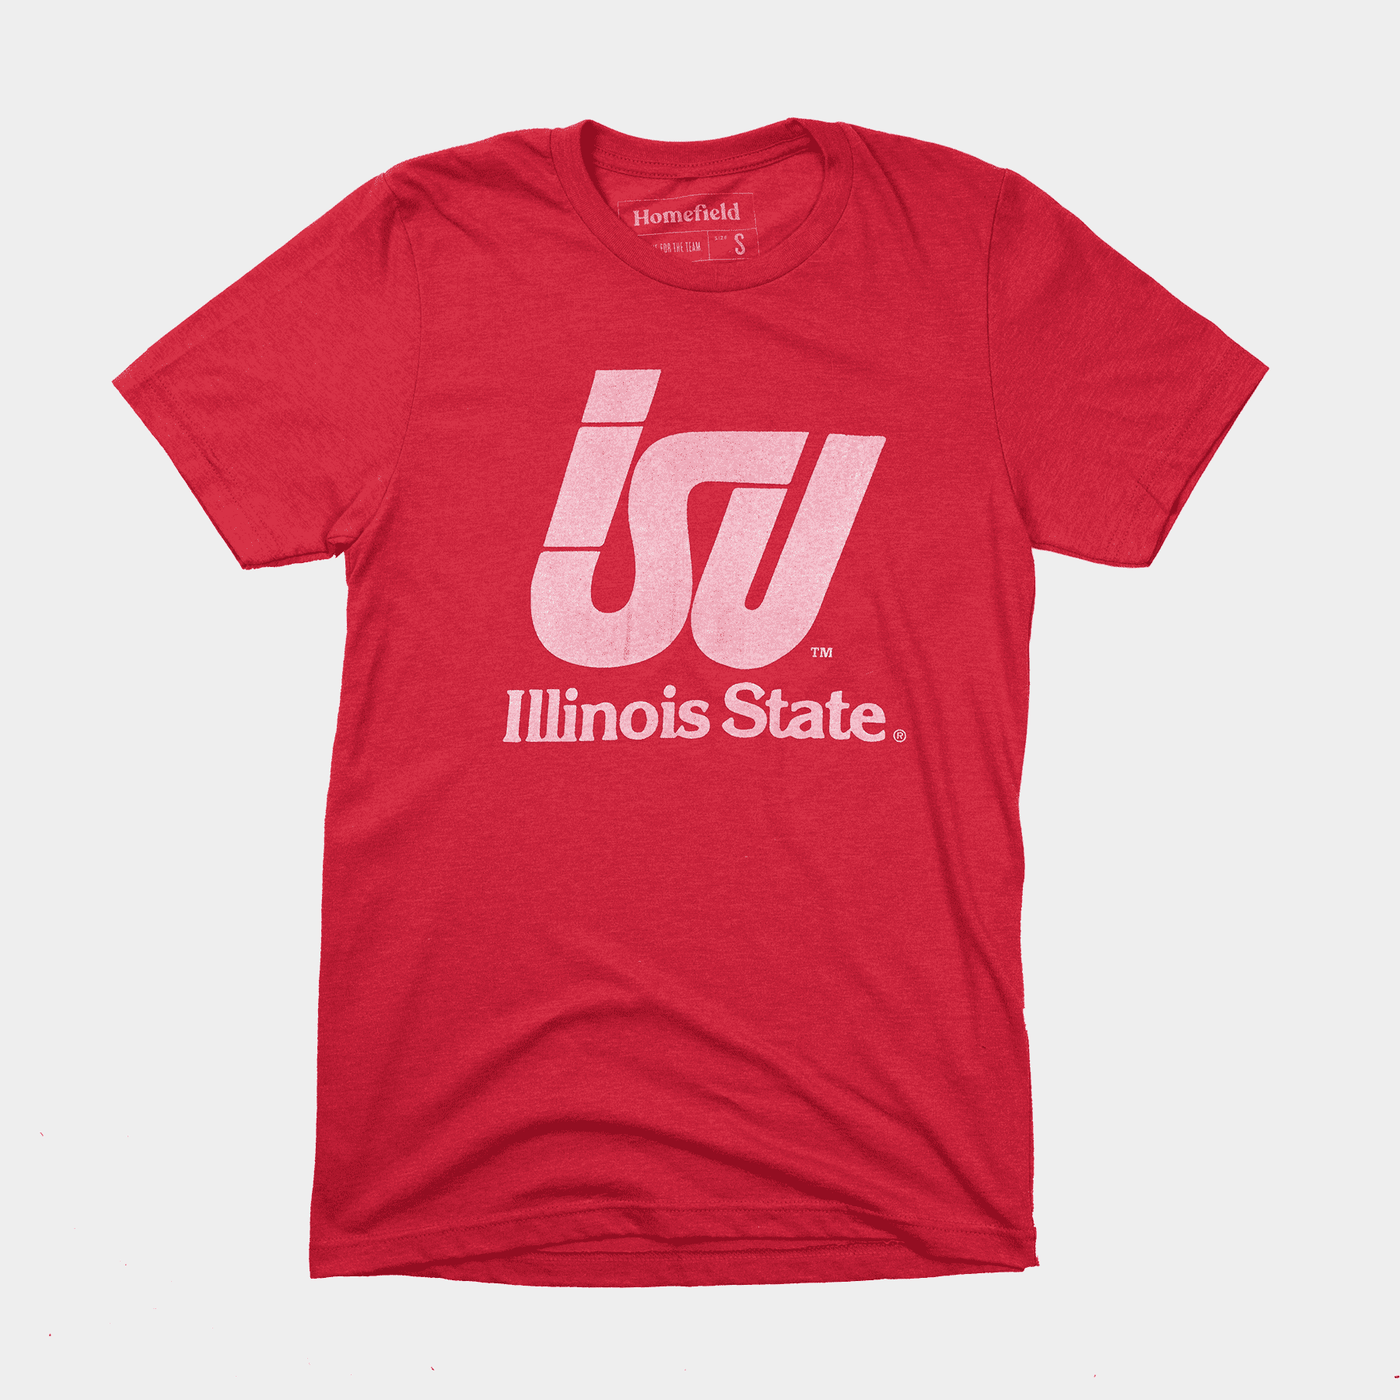 Illinois State Vintage ISU Tee